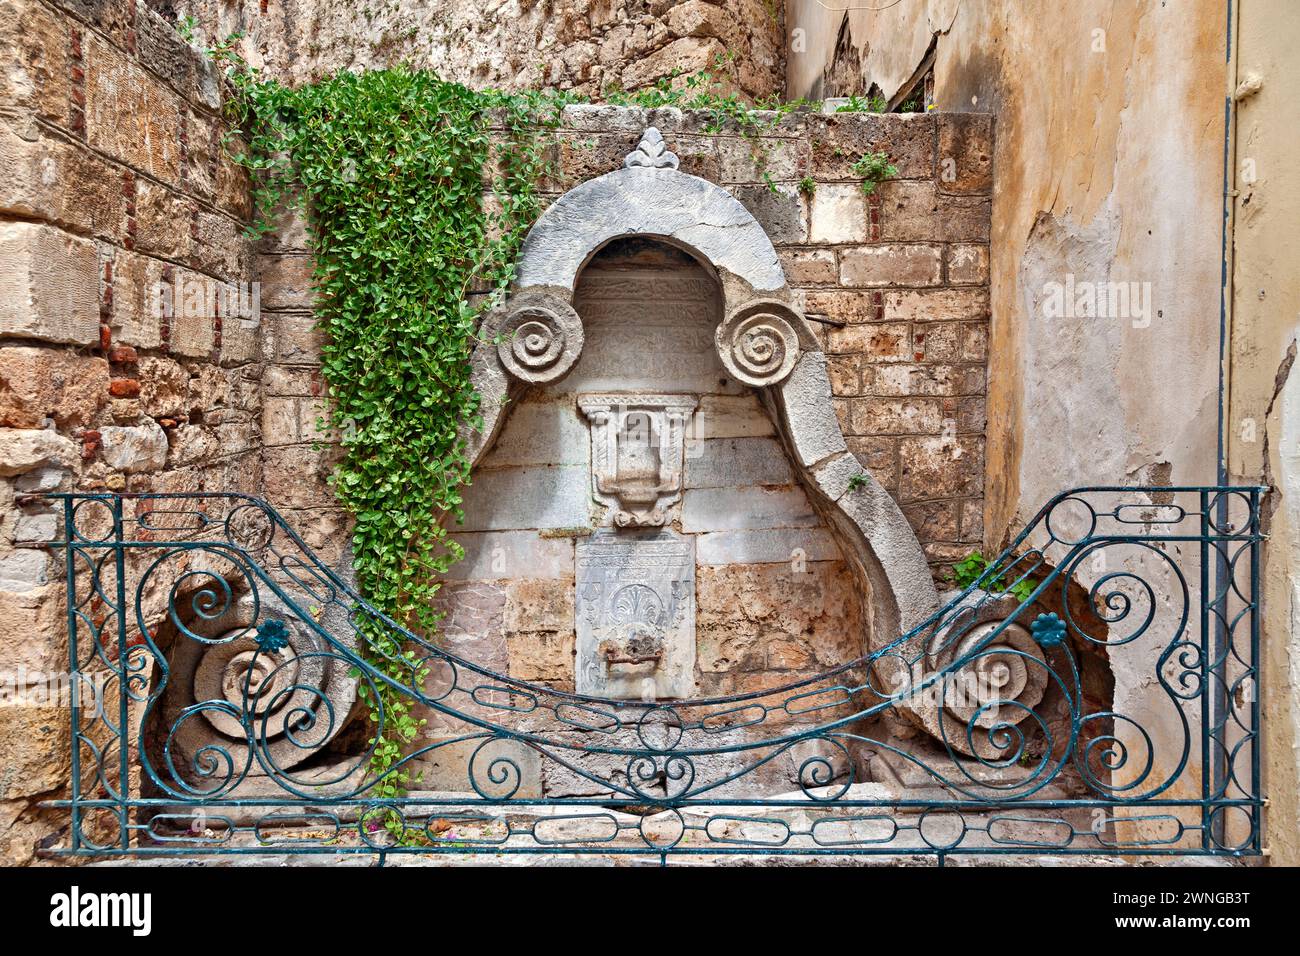 Ancienne fontaine ottomane de la fin du XVIIIe siècle, avec des écrits religieux en alphabet ottoman et protégée par une balustrade métallique, dans la vieille ville de Nauplie. Banque D'Images